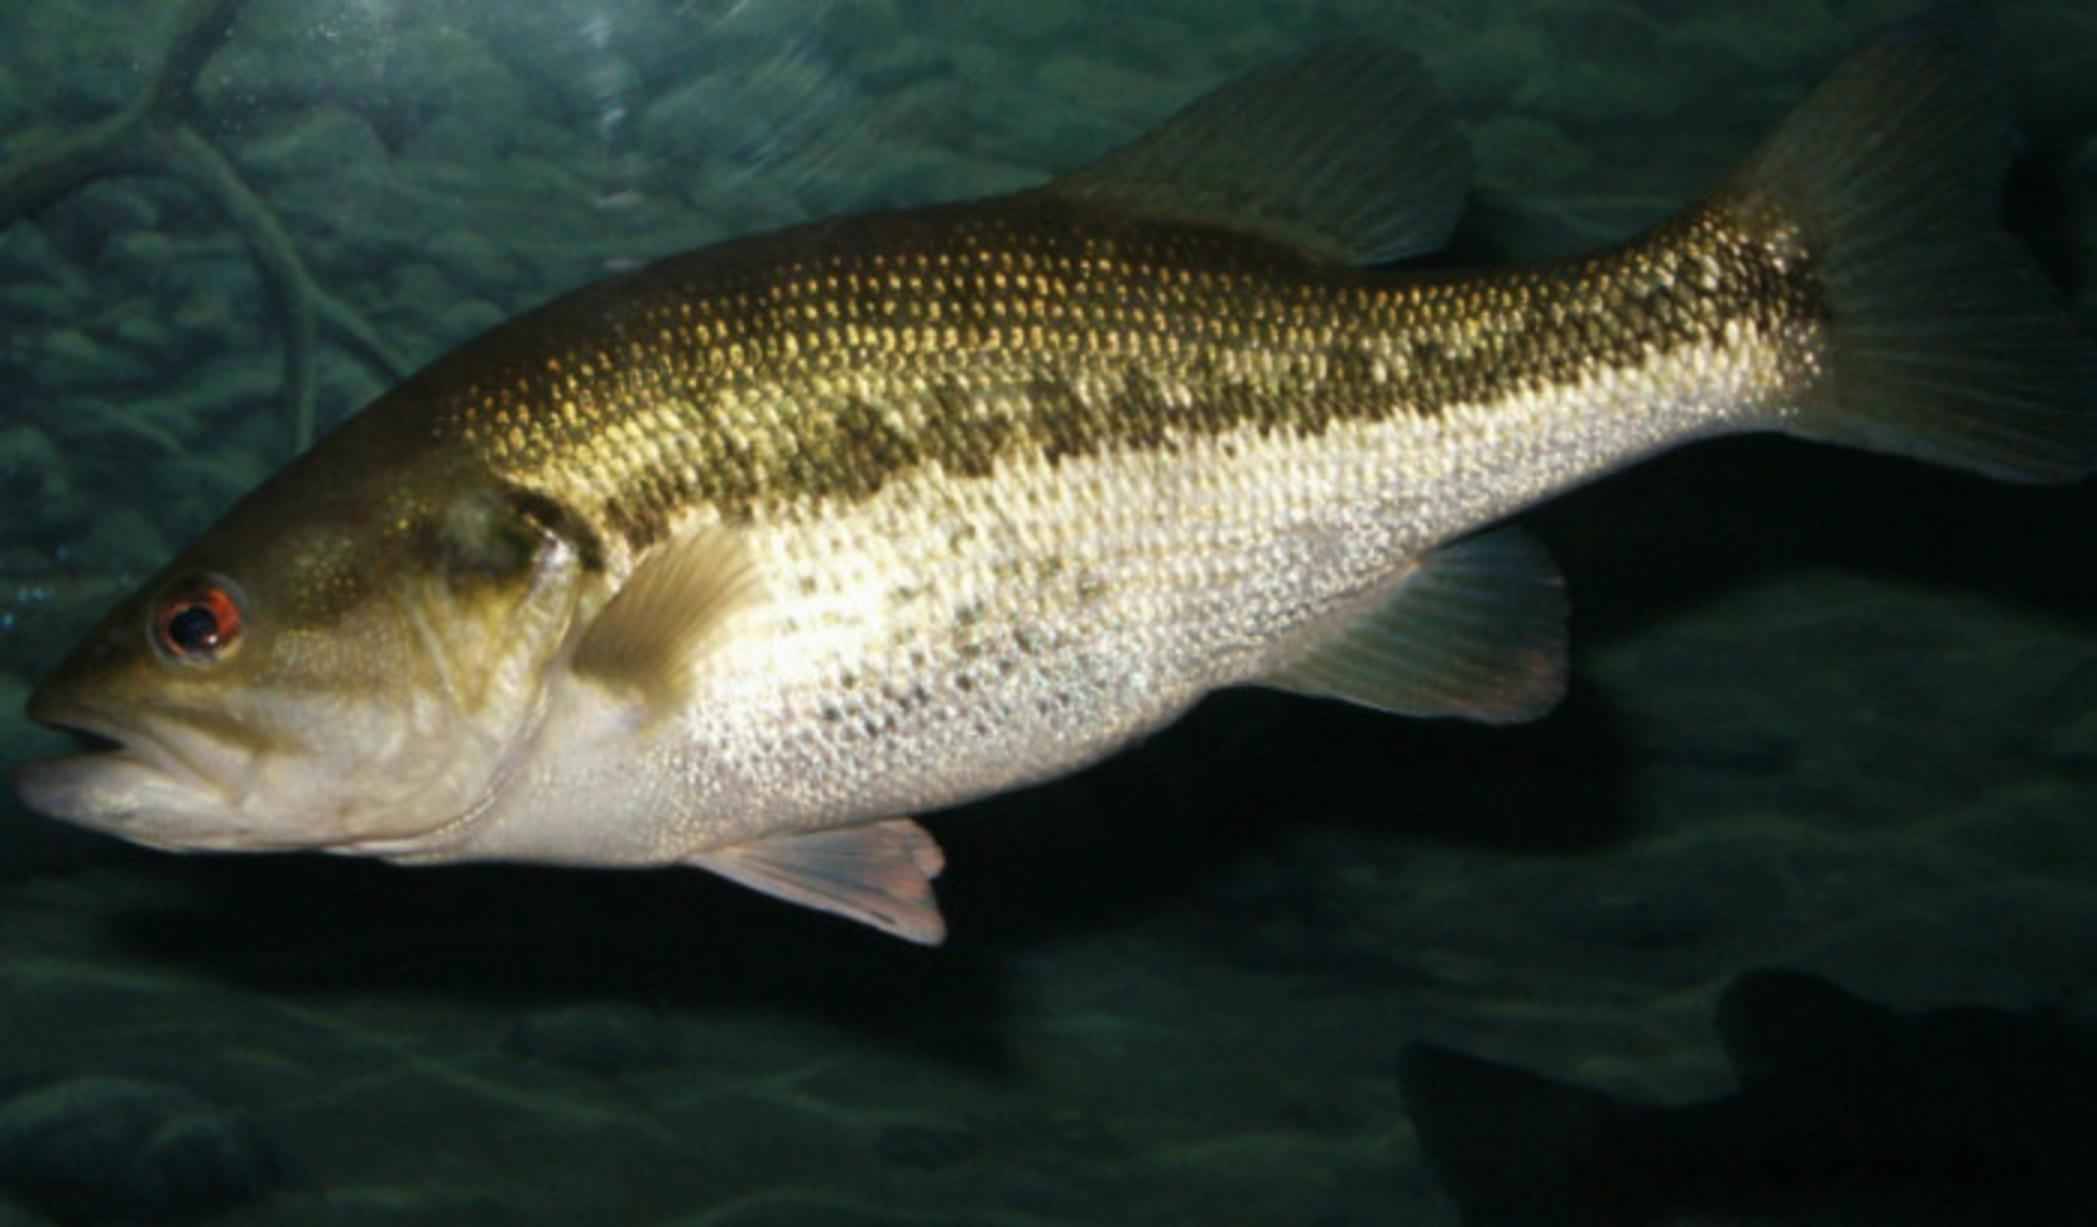 Рыба «басс гибридный» фото и описание